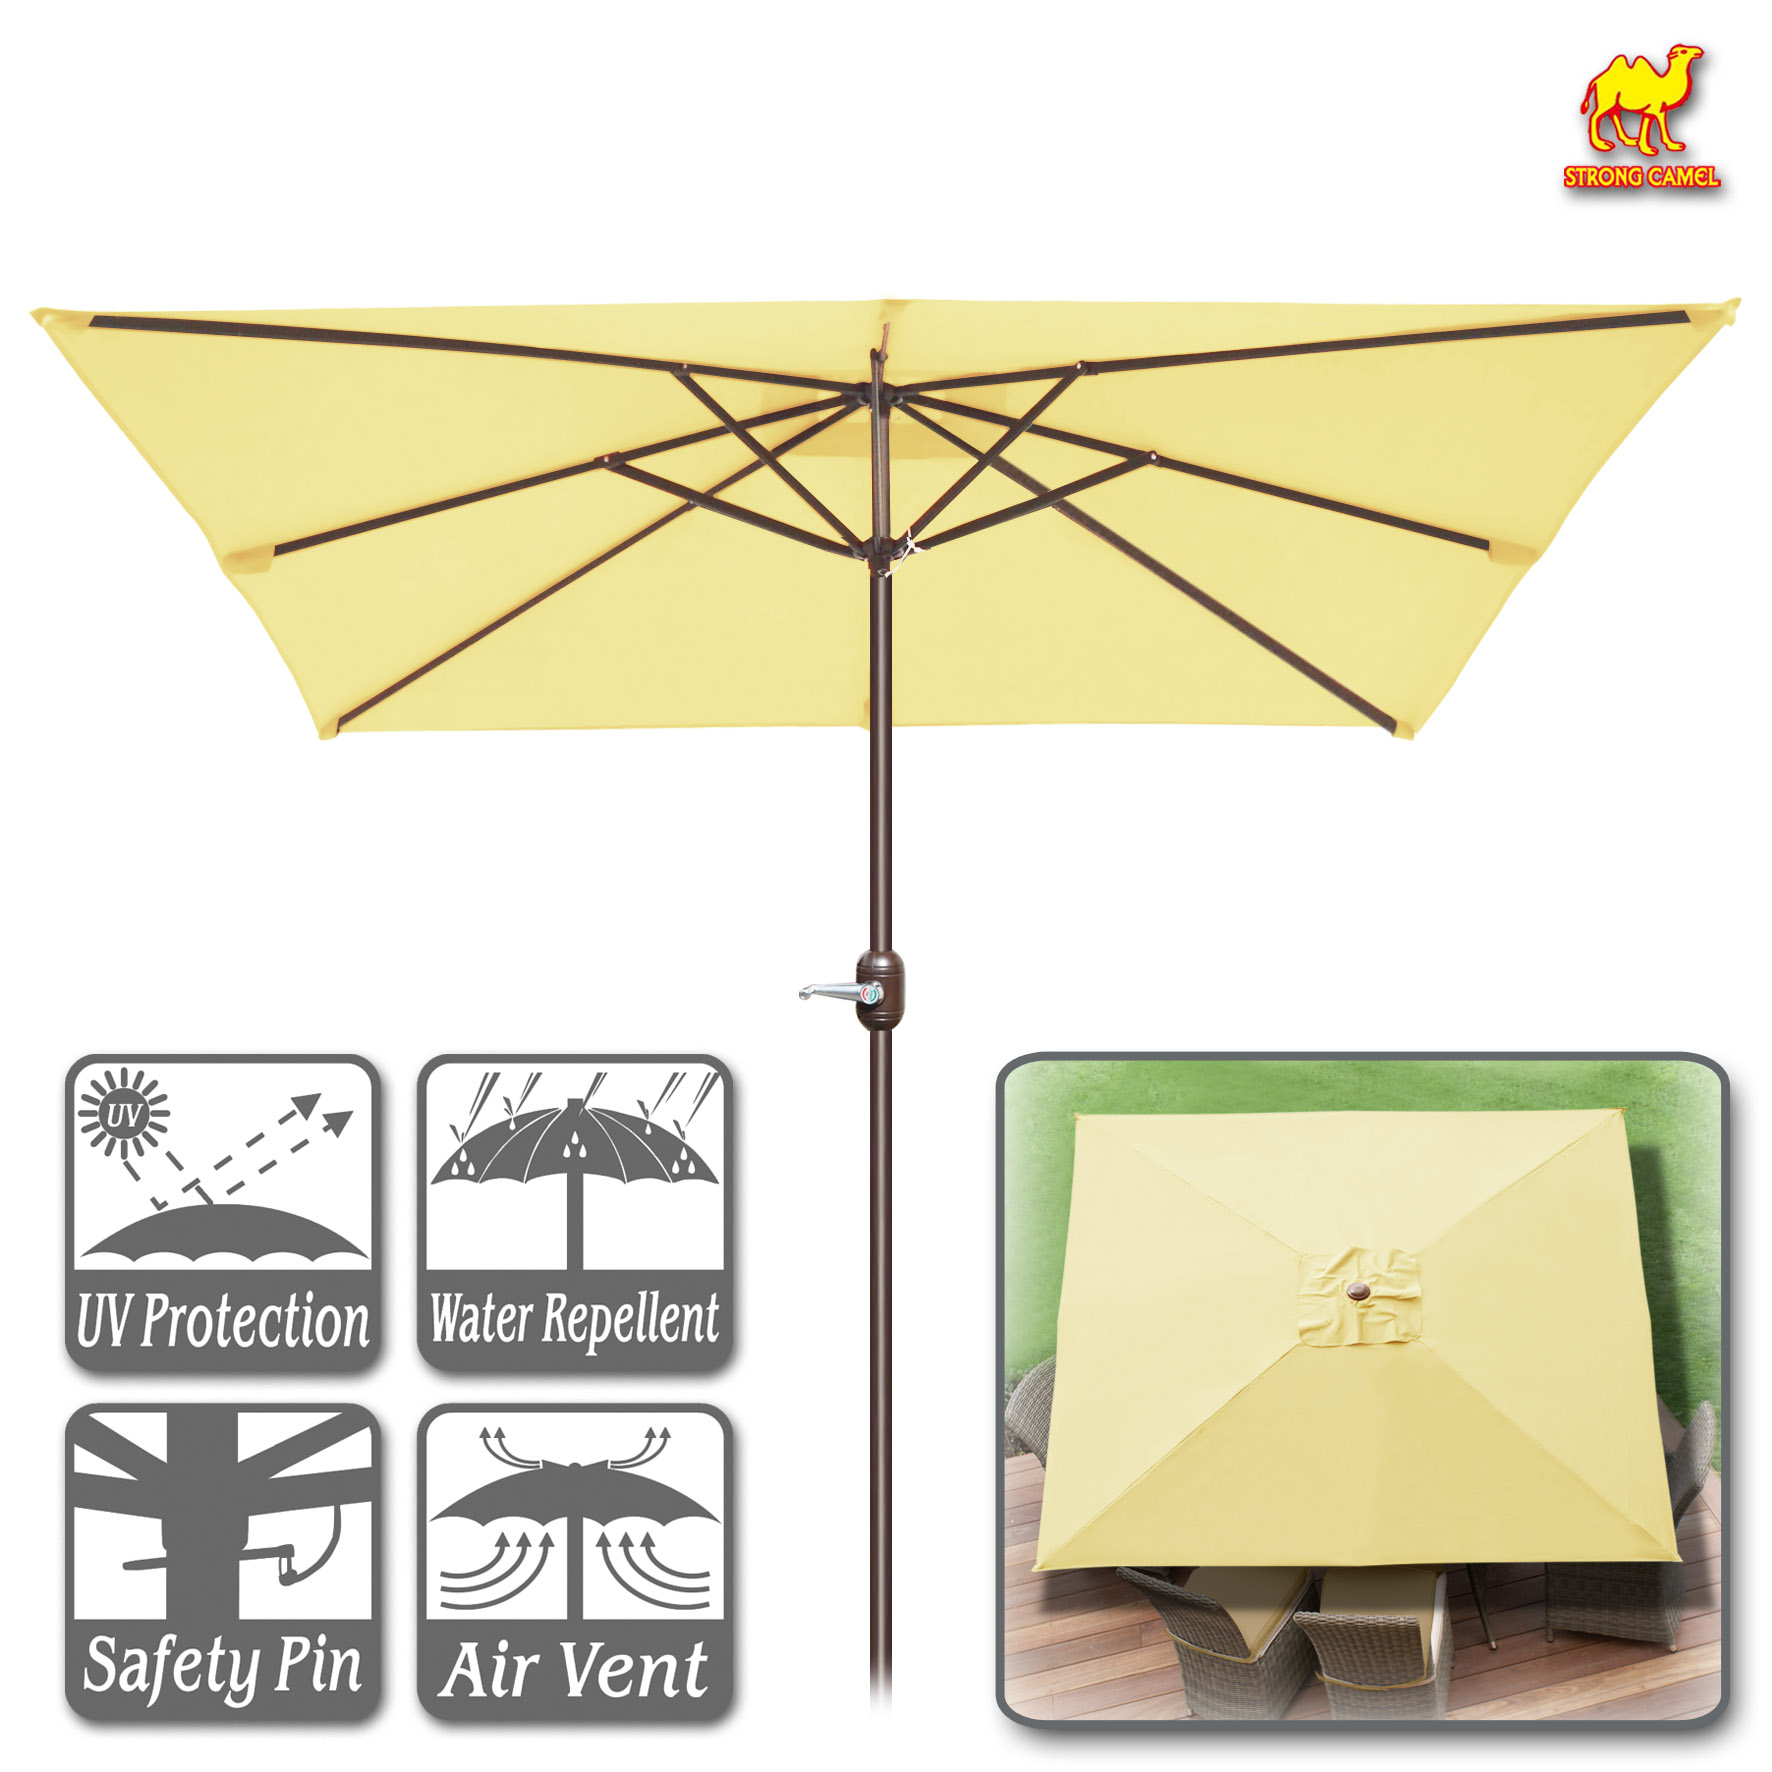 Strong Camel 8' x 8' Outdoor Patio Umbrella Sunshade Table Market Umbrella with Tilt&Crank for Garden, Deck, Backyard - image 1 of 8